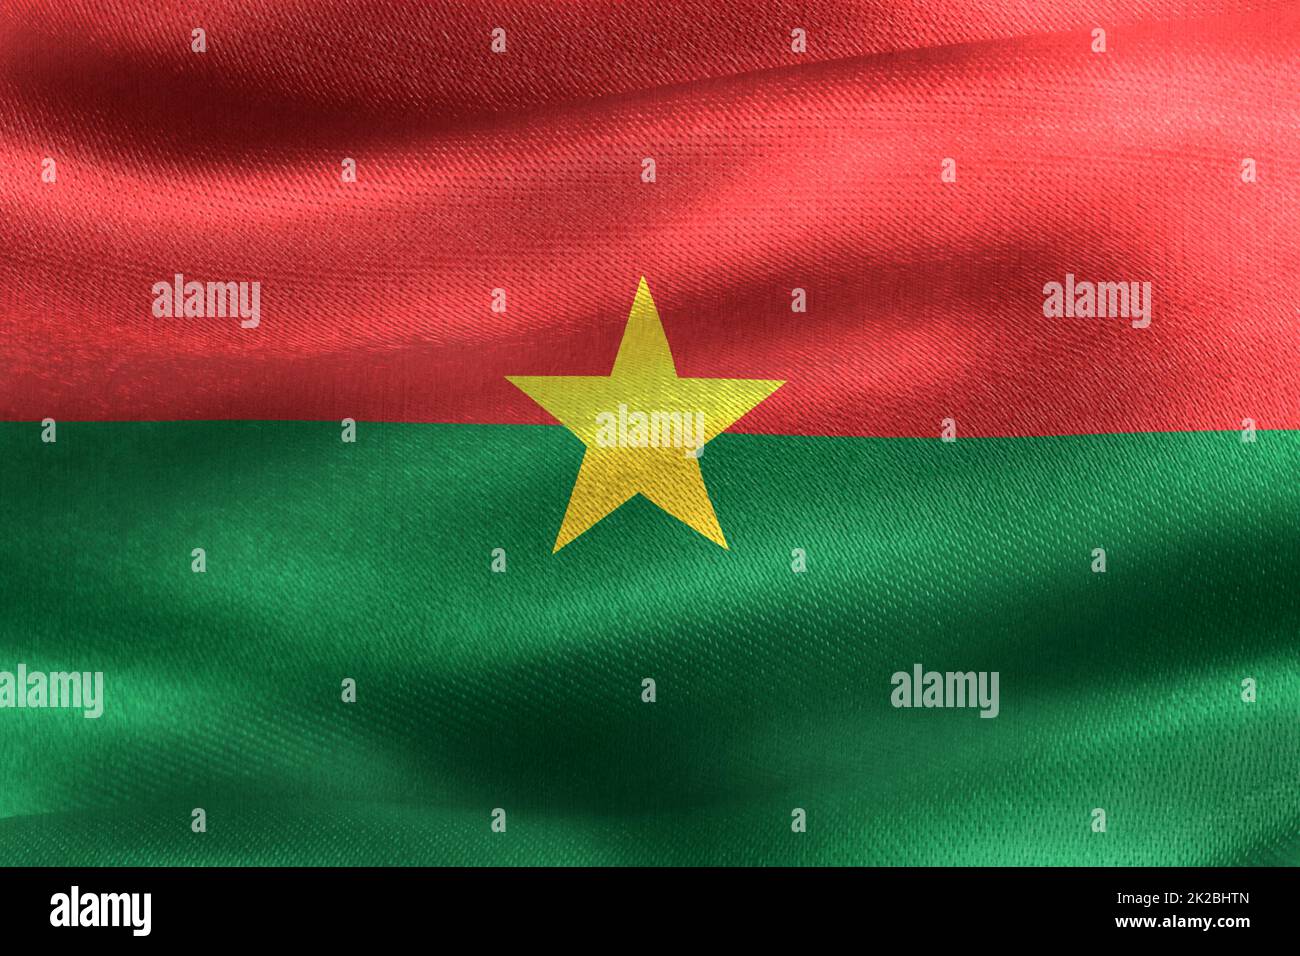 Drapeau du Burkina Faso - drapeau de tissu d'ondulation réaliste Banque D'Images